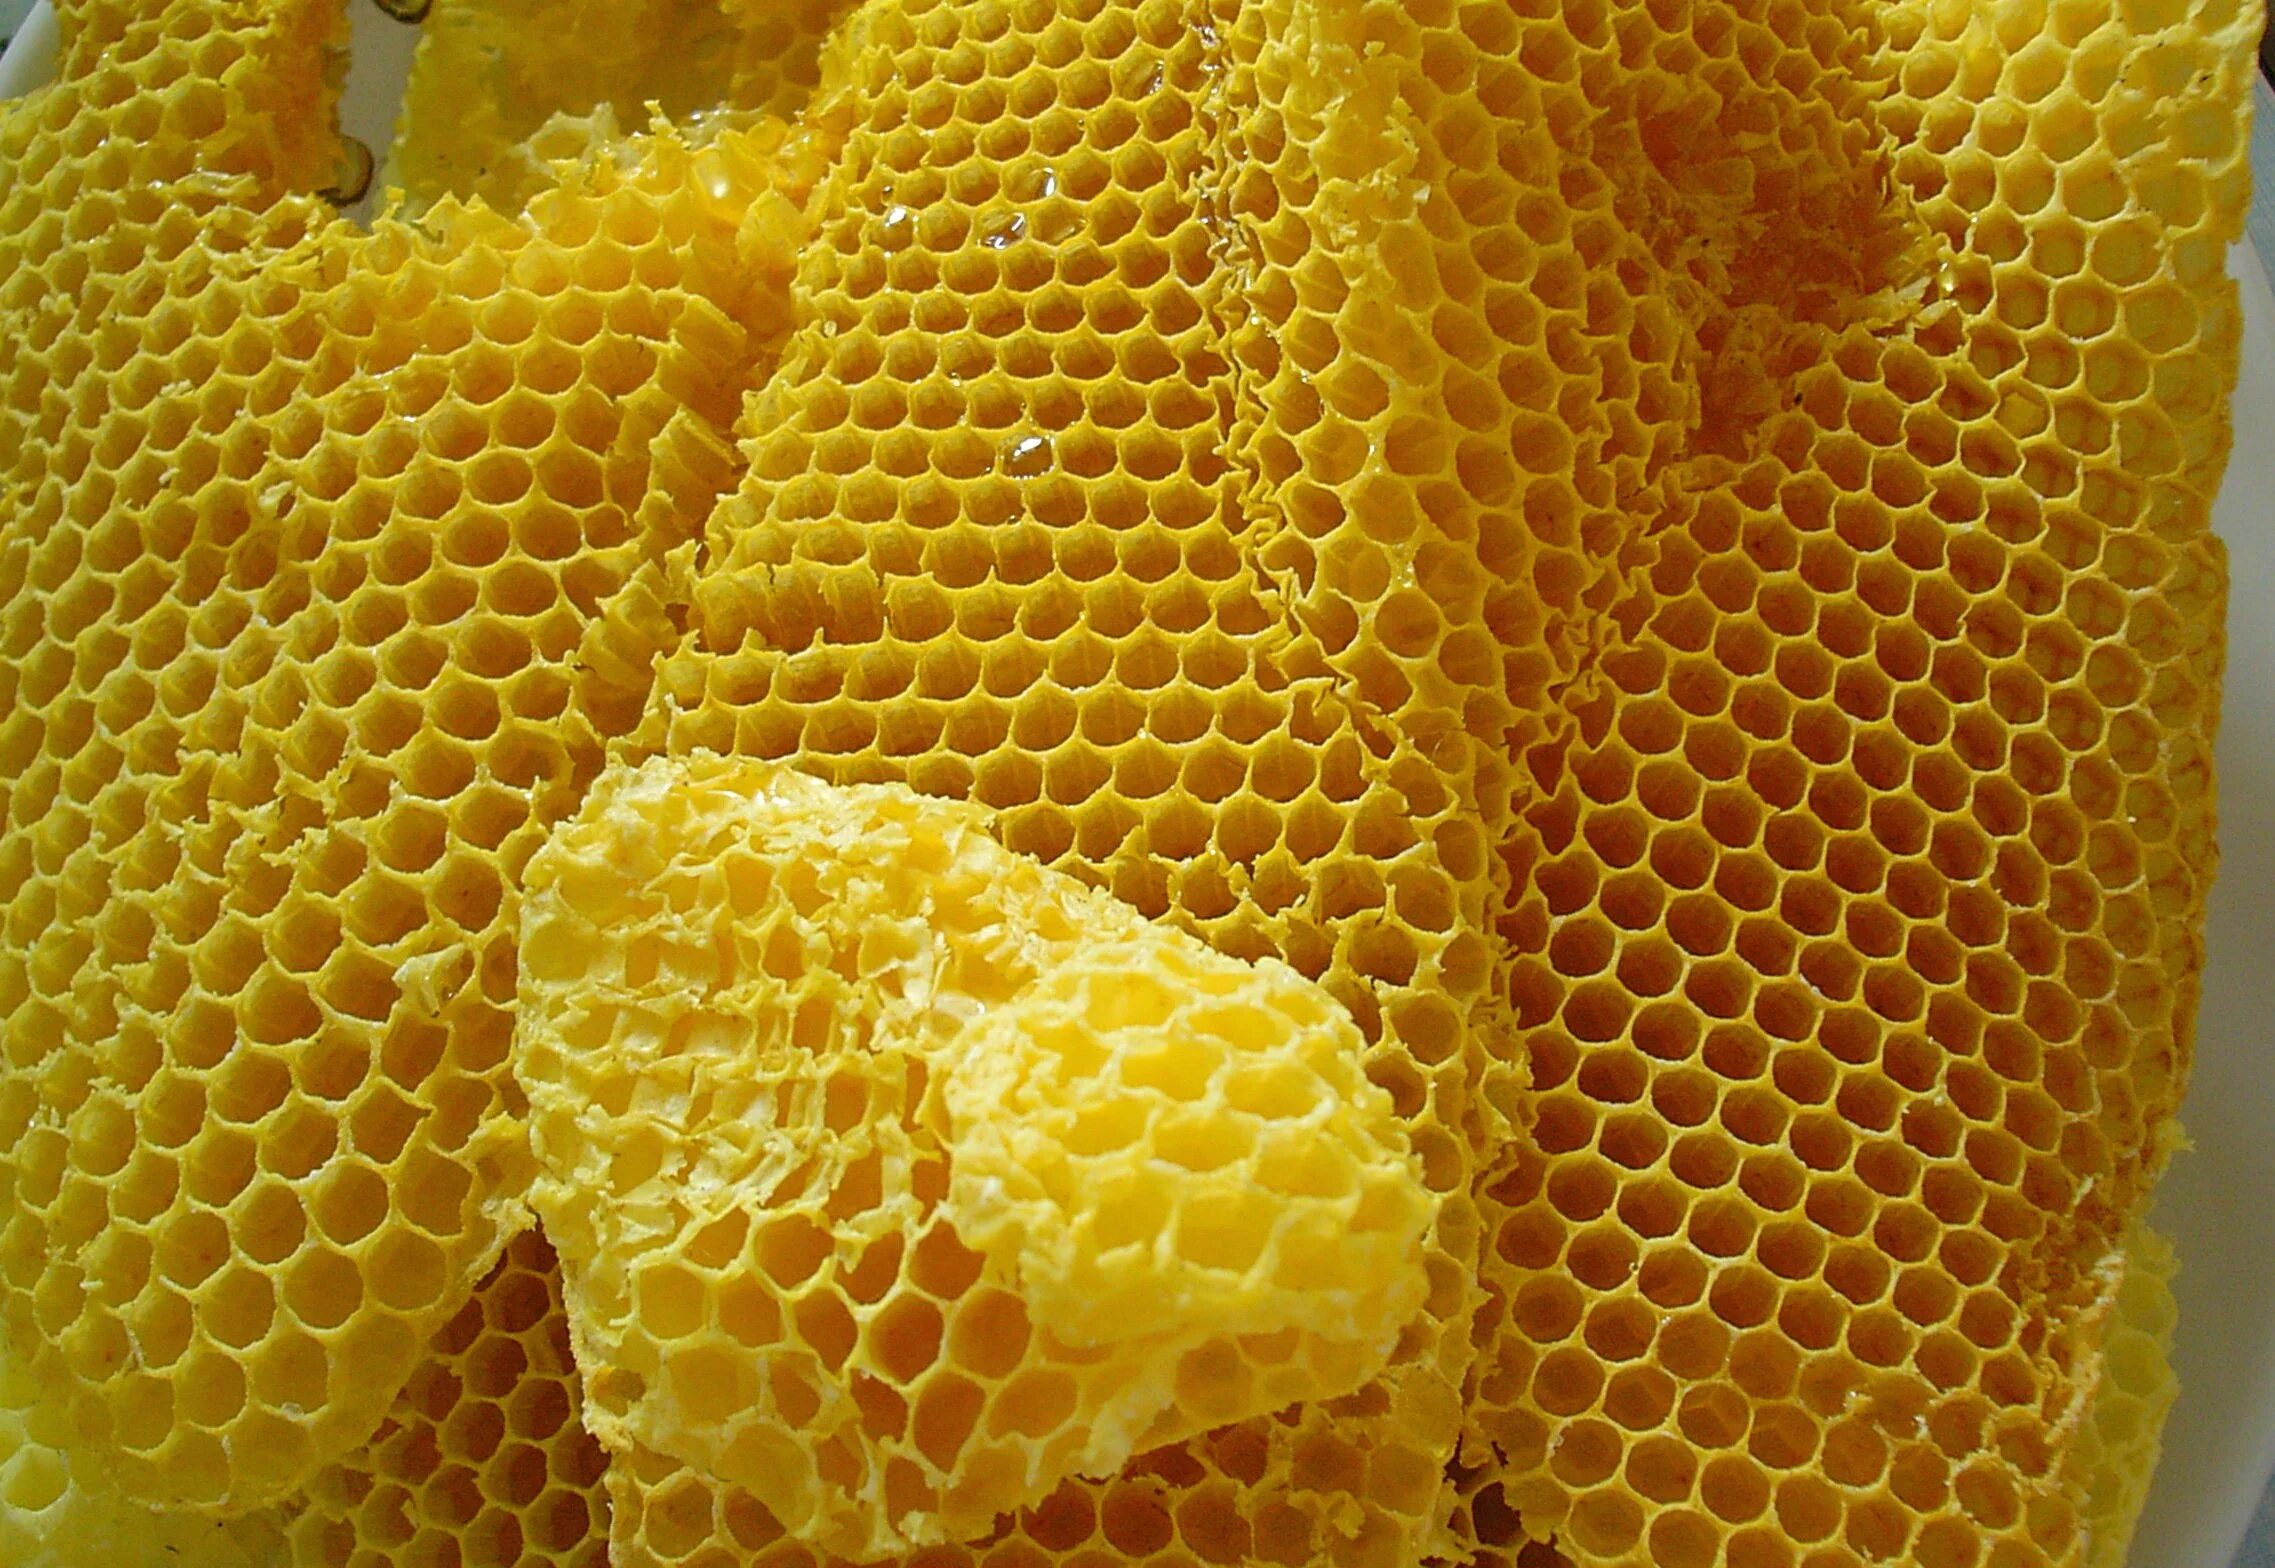 Искусственная восковая основа пчелиных сот 6 букв. Медовая вощина. Пчелиный воск. Соты пчелиные. Пчелиный воск соты.